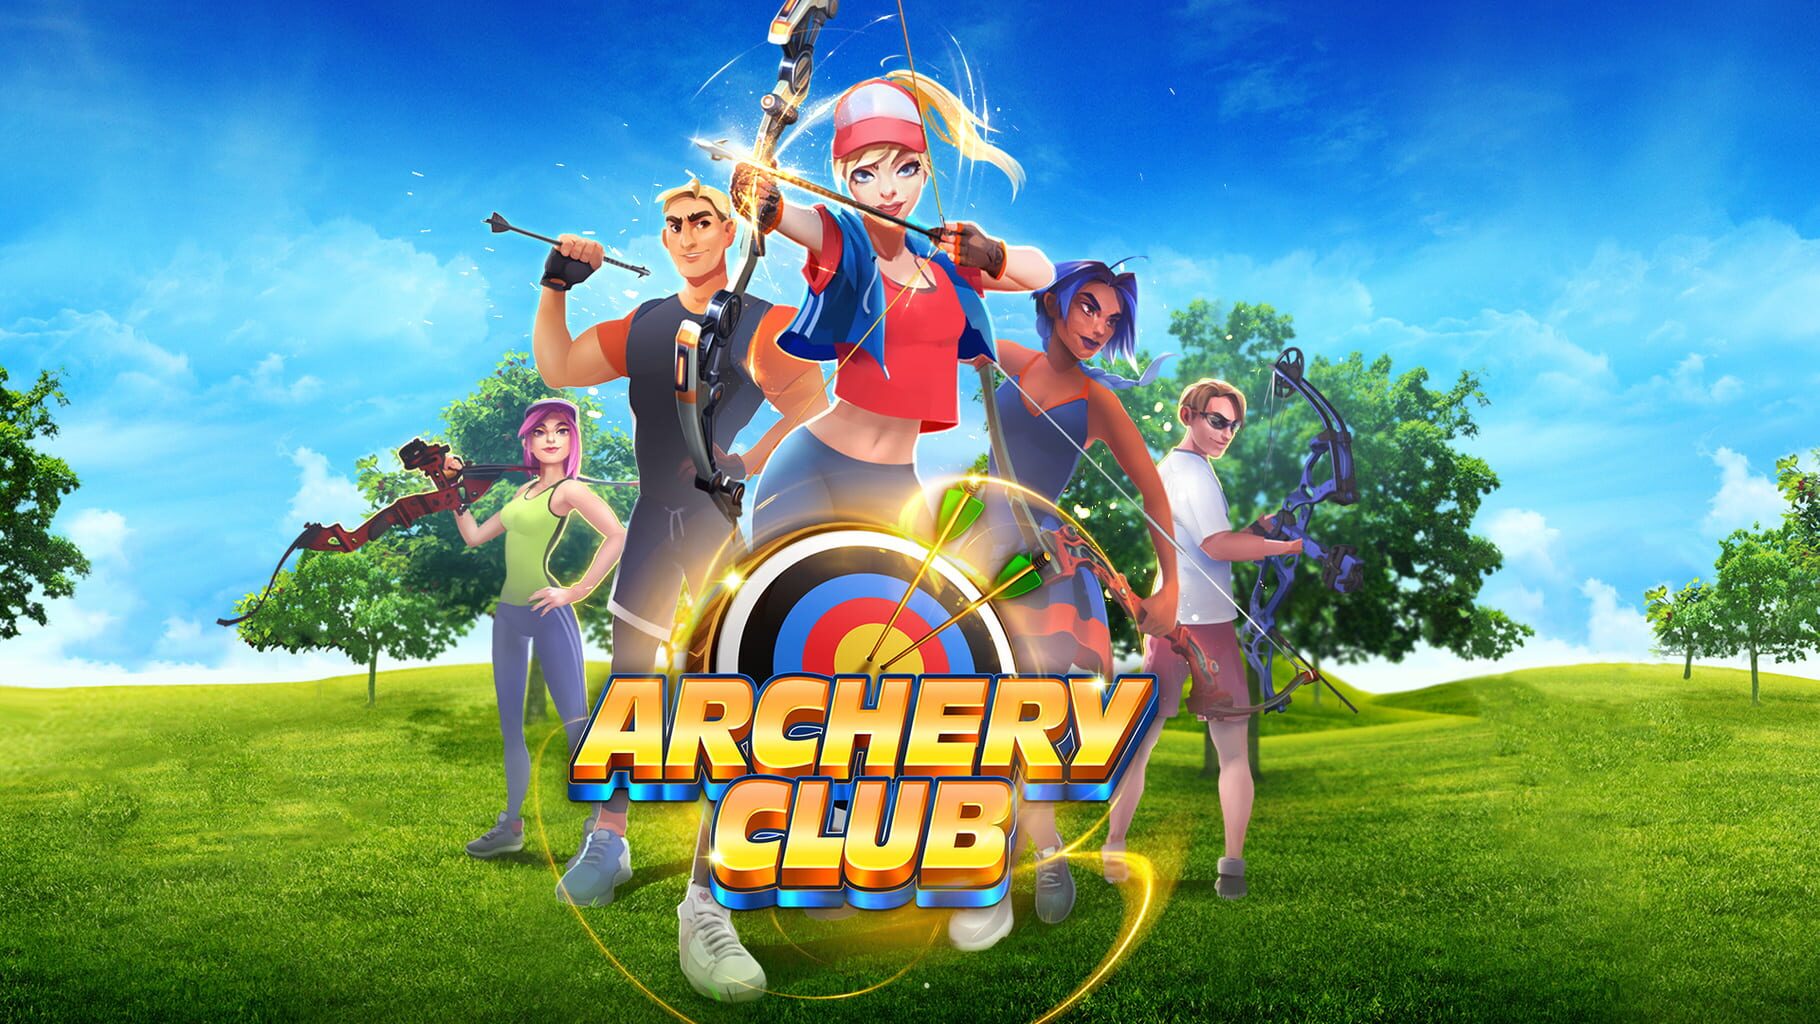 Archery Club artwork